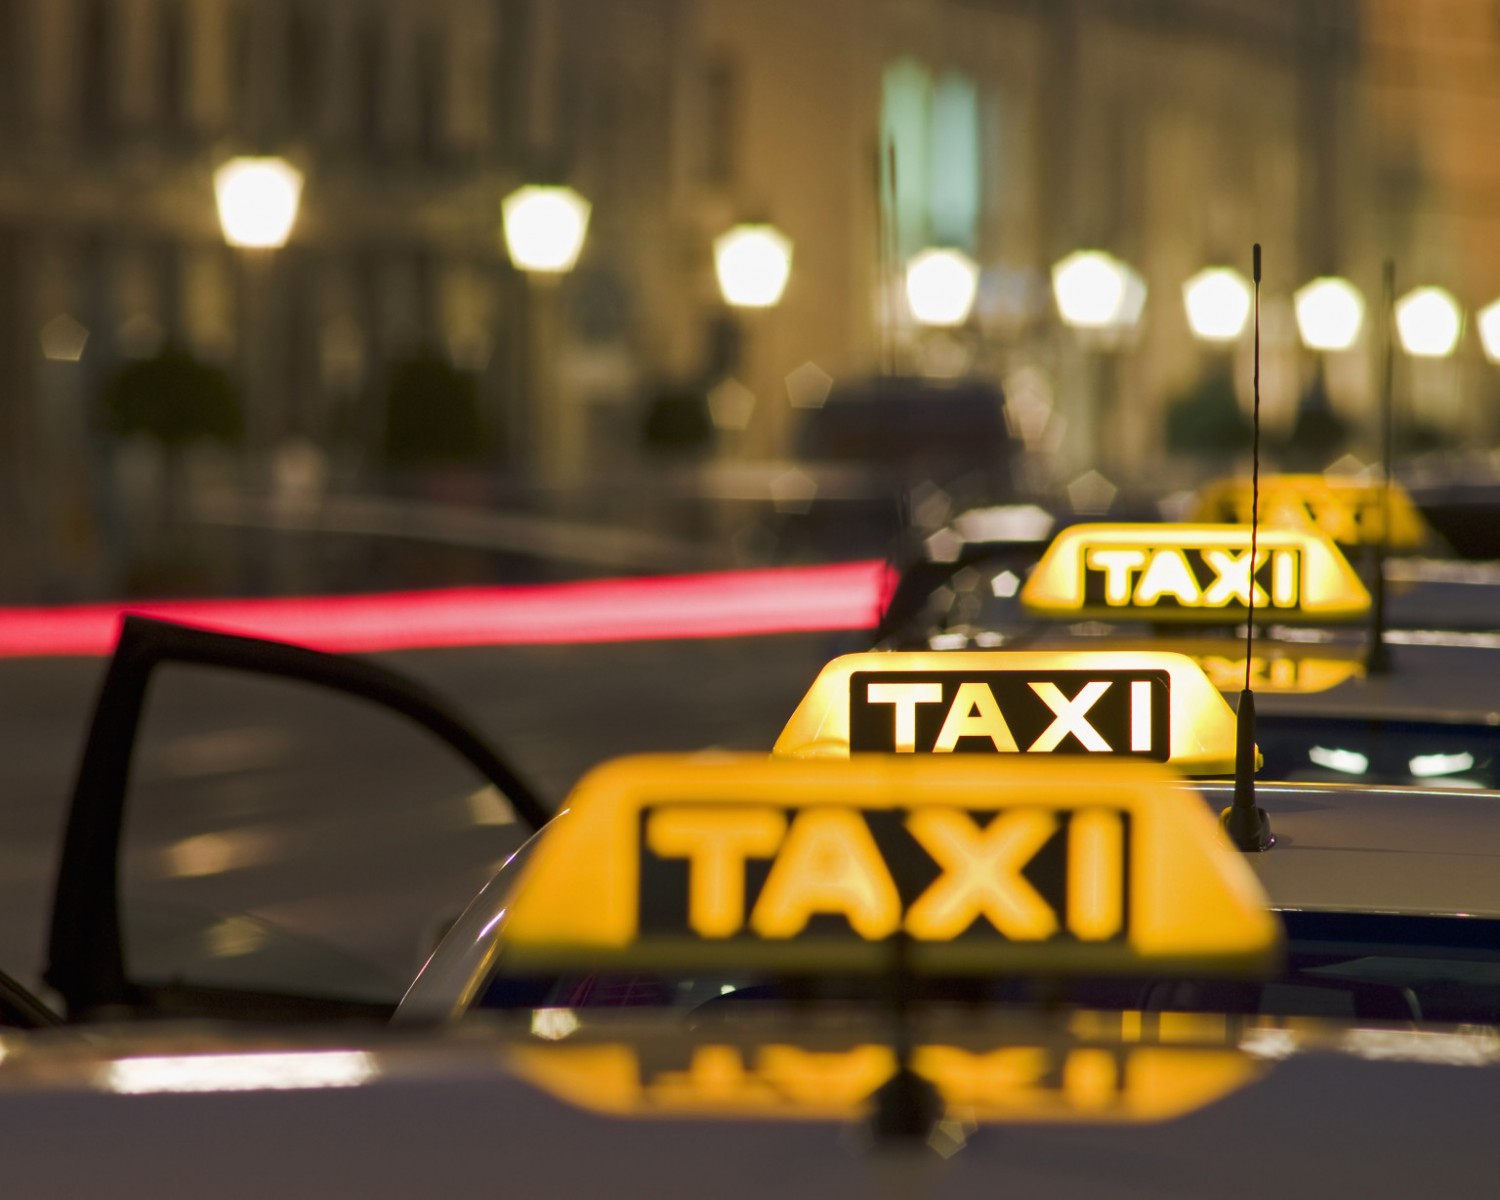 цены в Yandex такси в Москве